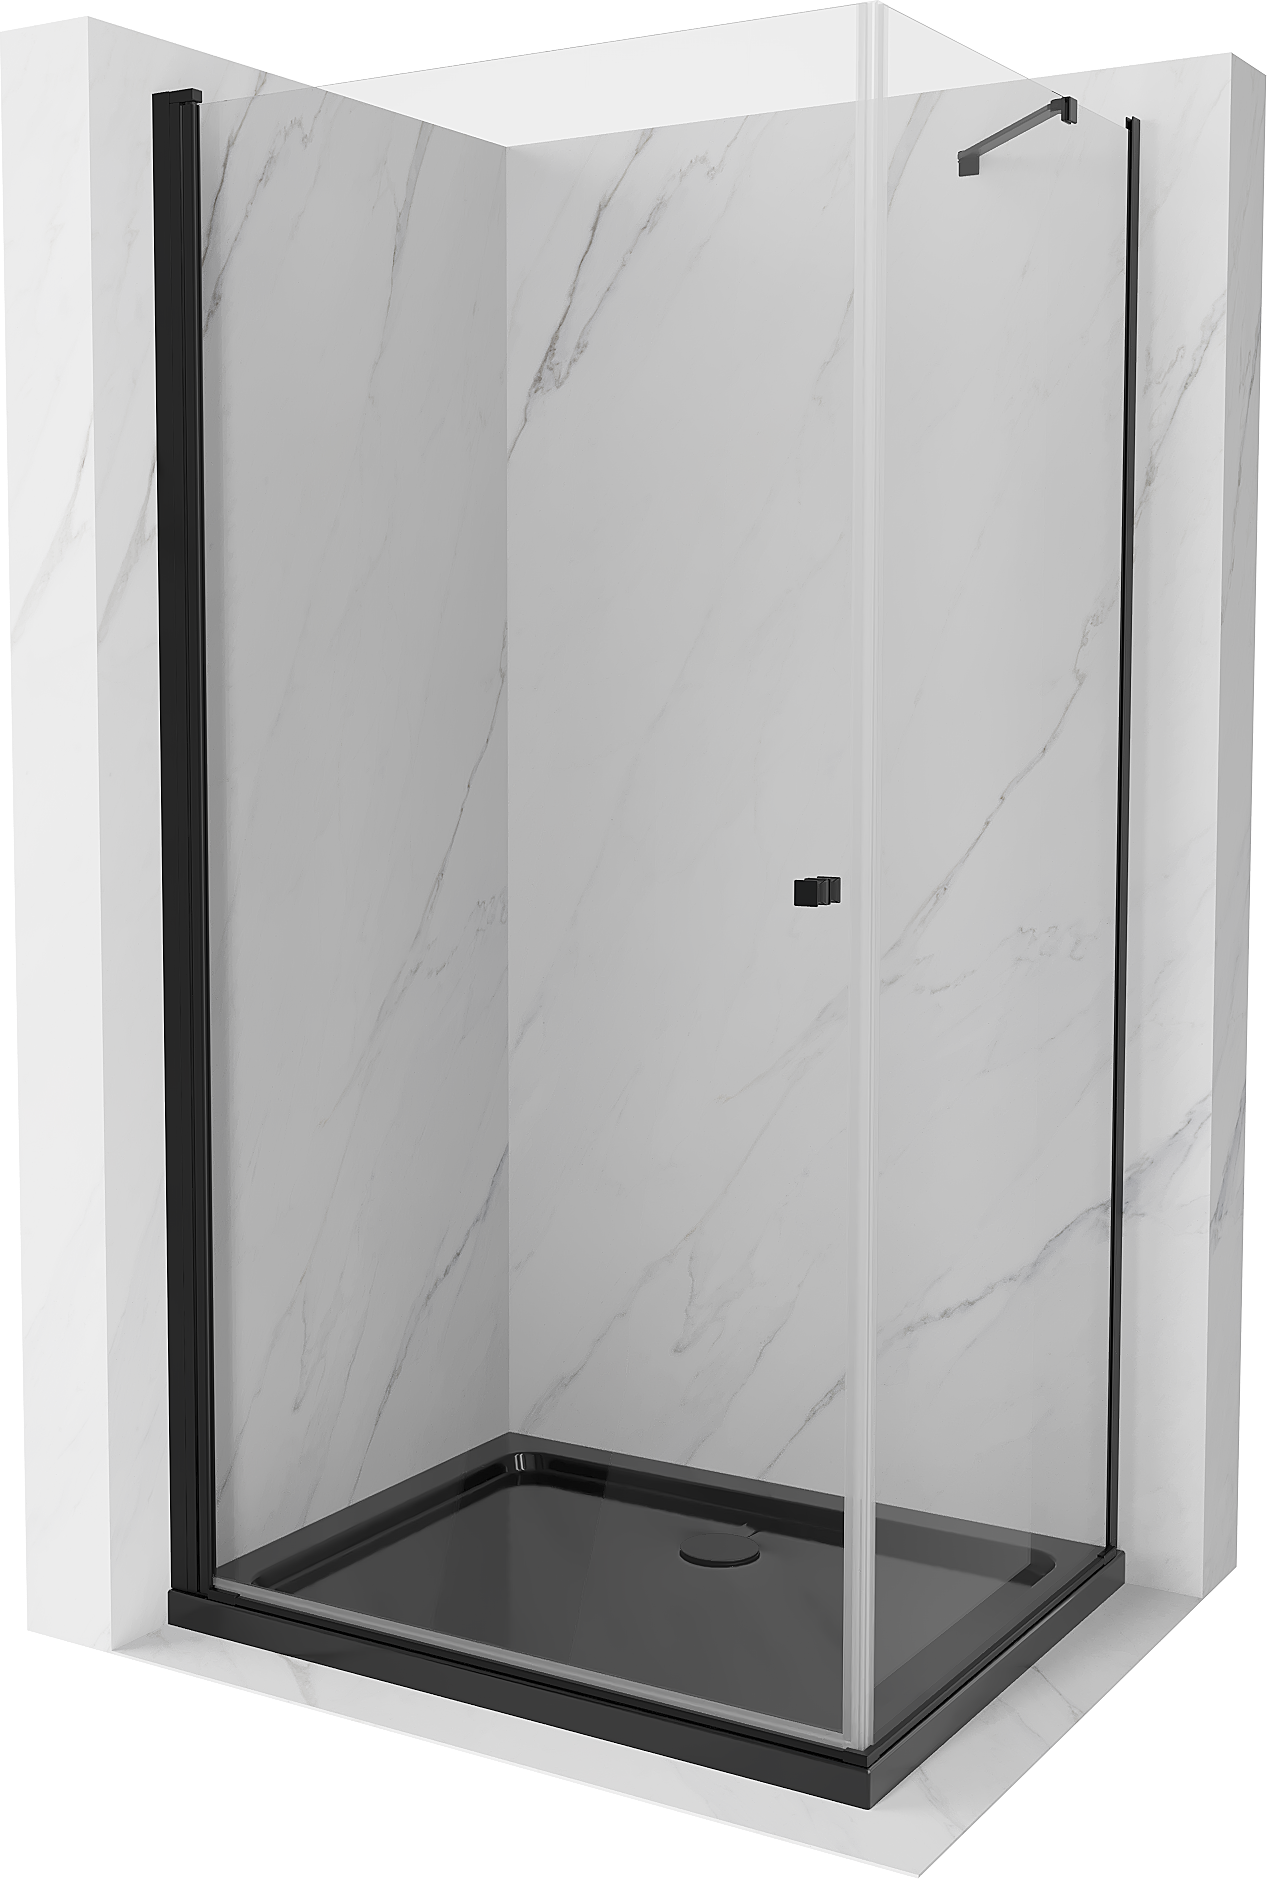 Mexen Pretoria kabina prysznicowa uchylna 90 x 70 cm, transparent, czarna + brodzik Flat, czarny - 852-090-070-70-00-4070B